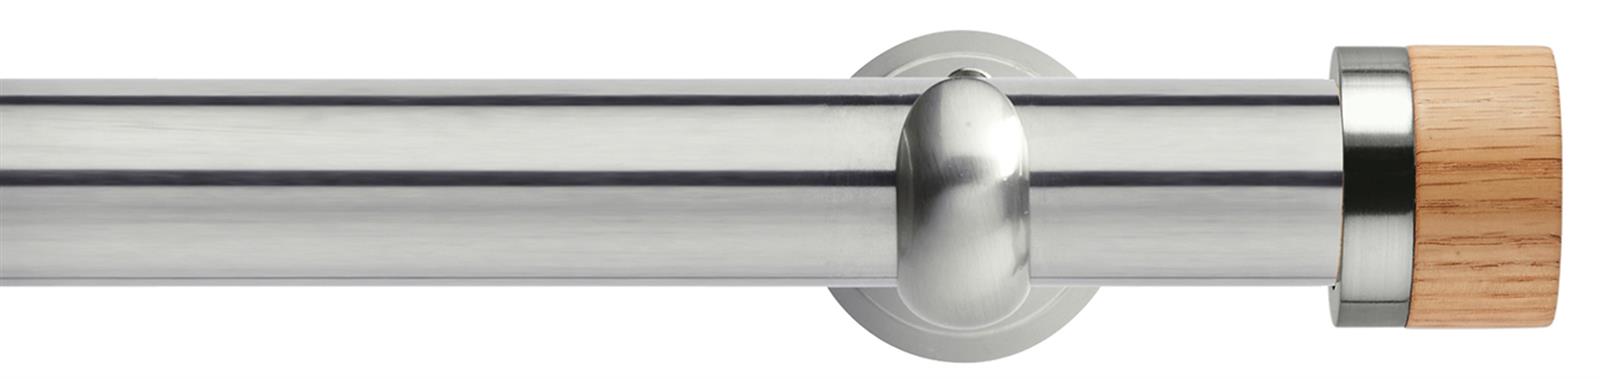 Neo 28mm Metal Eyelet Pole,Stainless Steel,Cup,Oak Stud